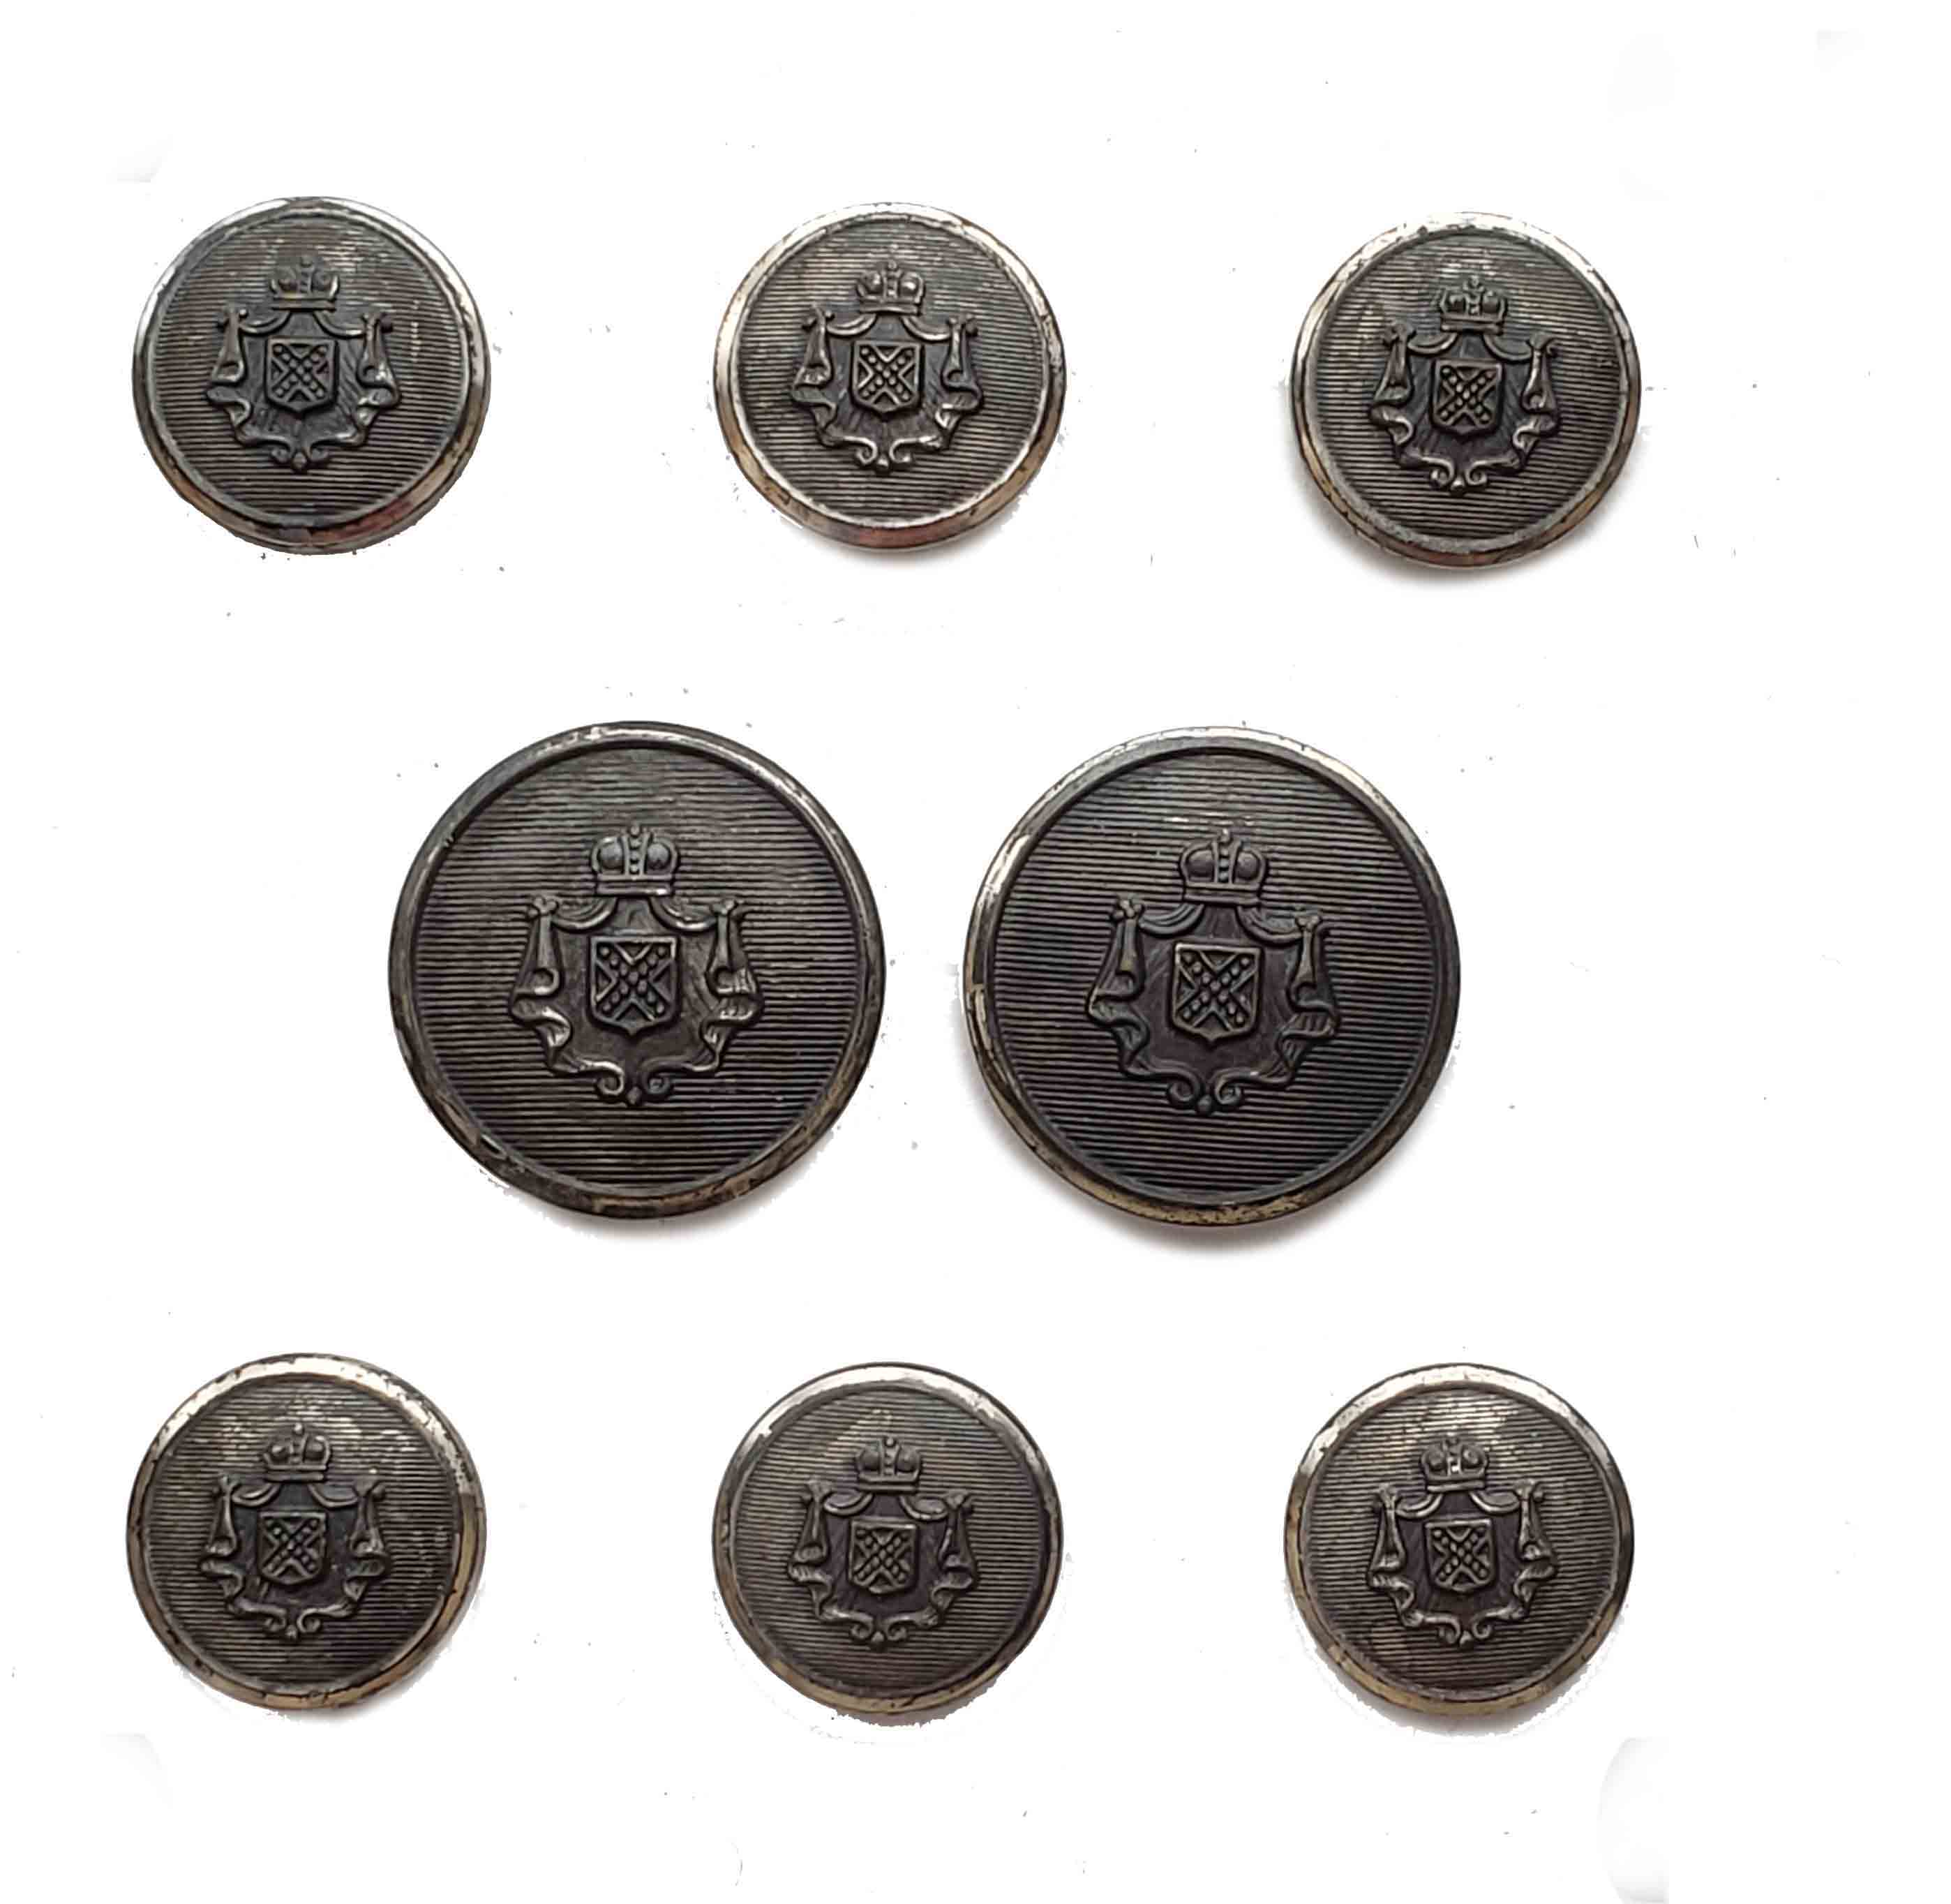 Vintage Stanley Blazer Blazer Buttons Set Gray Metal Crown Shield B5G 1970s Men's